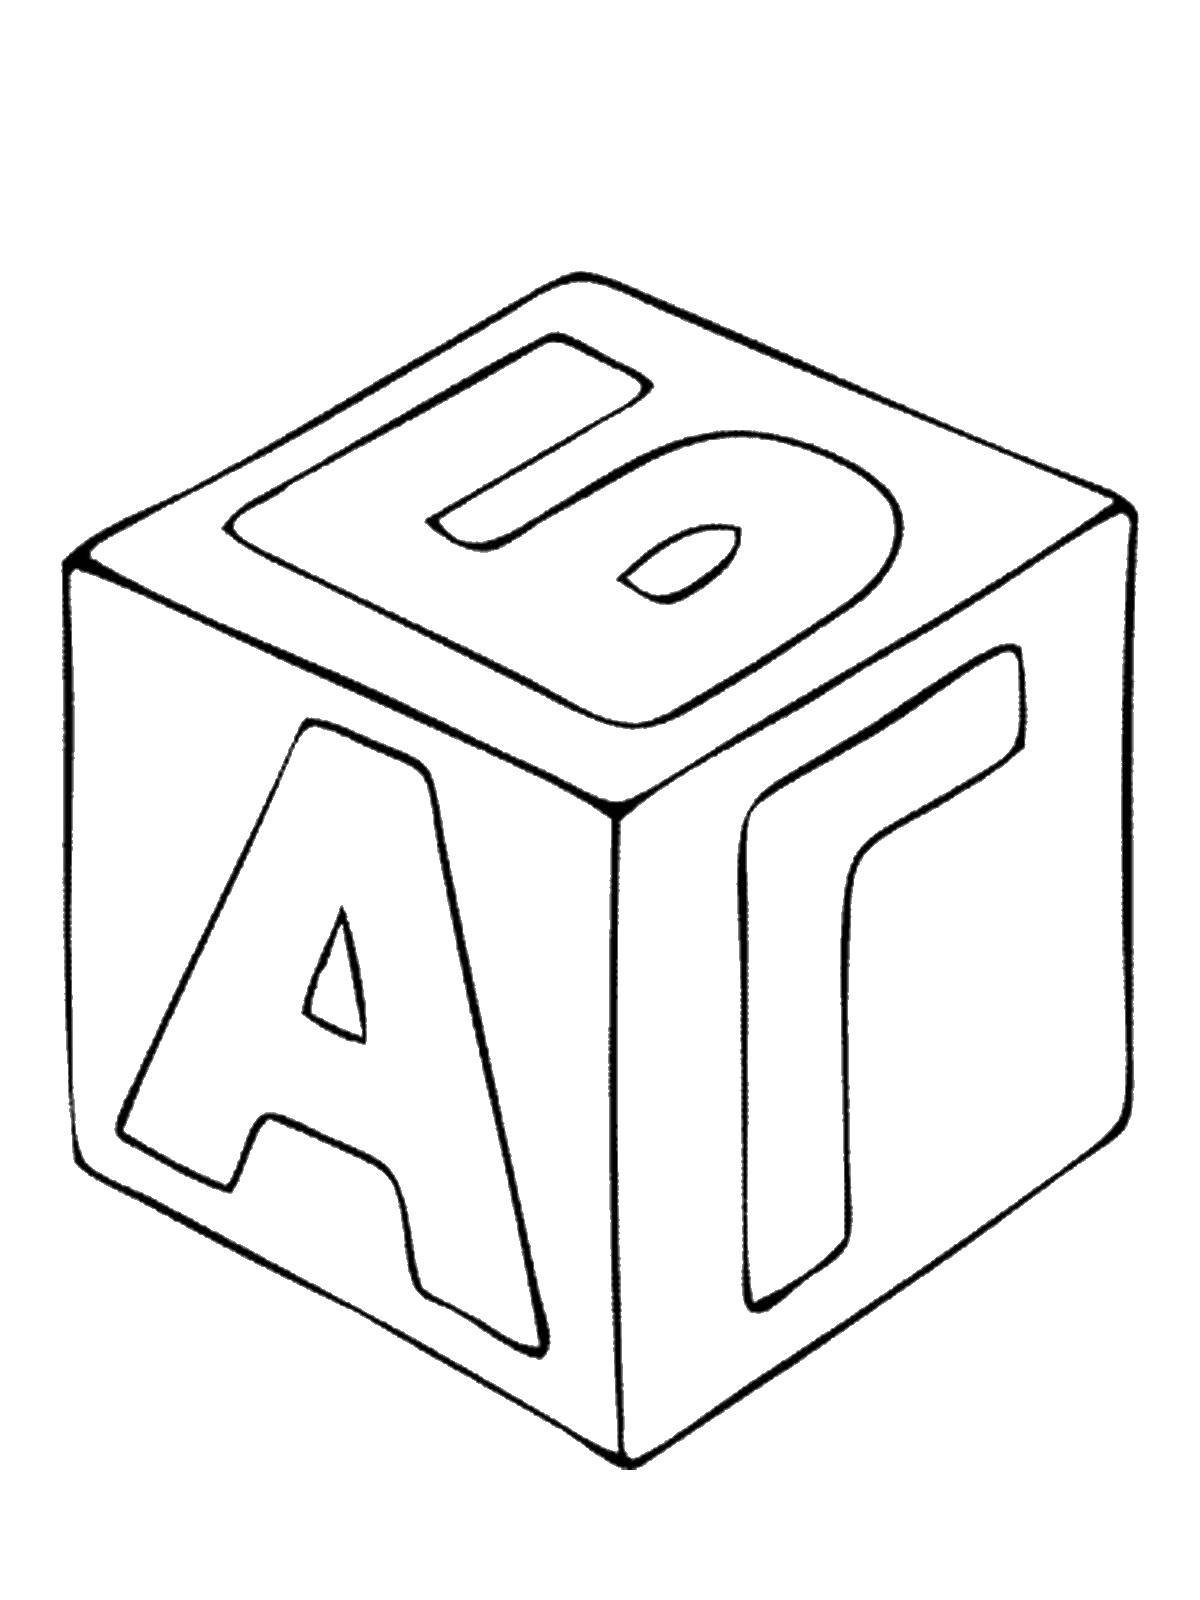 Название: Раскраска Кубик с буквами. Категория: игрушки. Теги: кубик, буквы, алфавит.